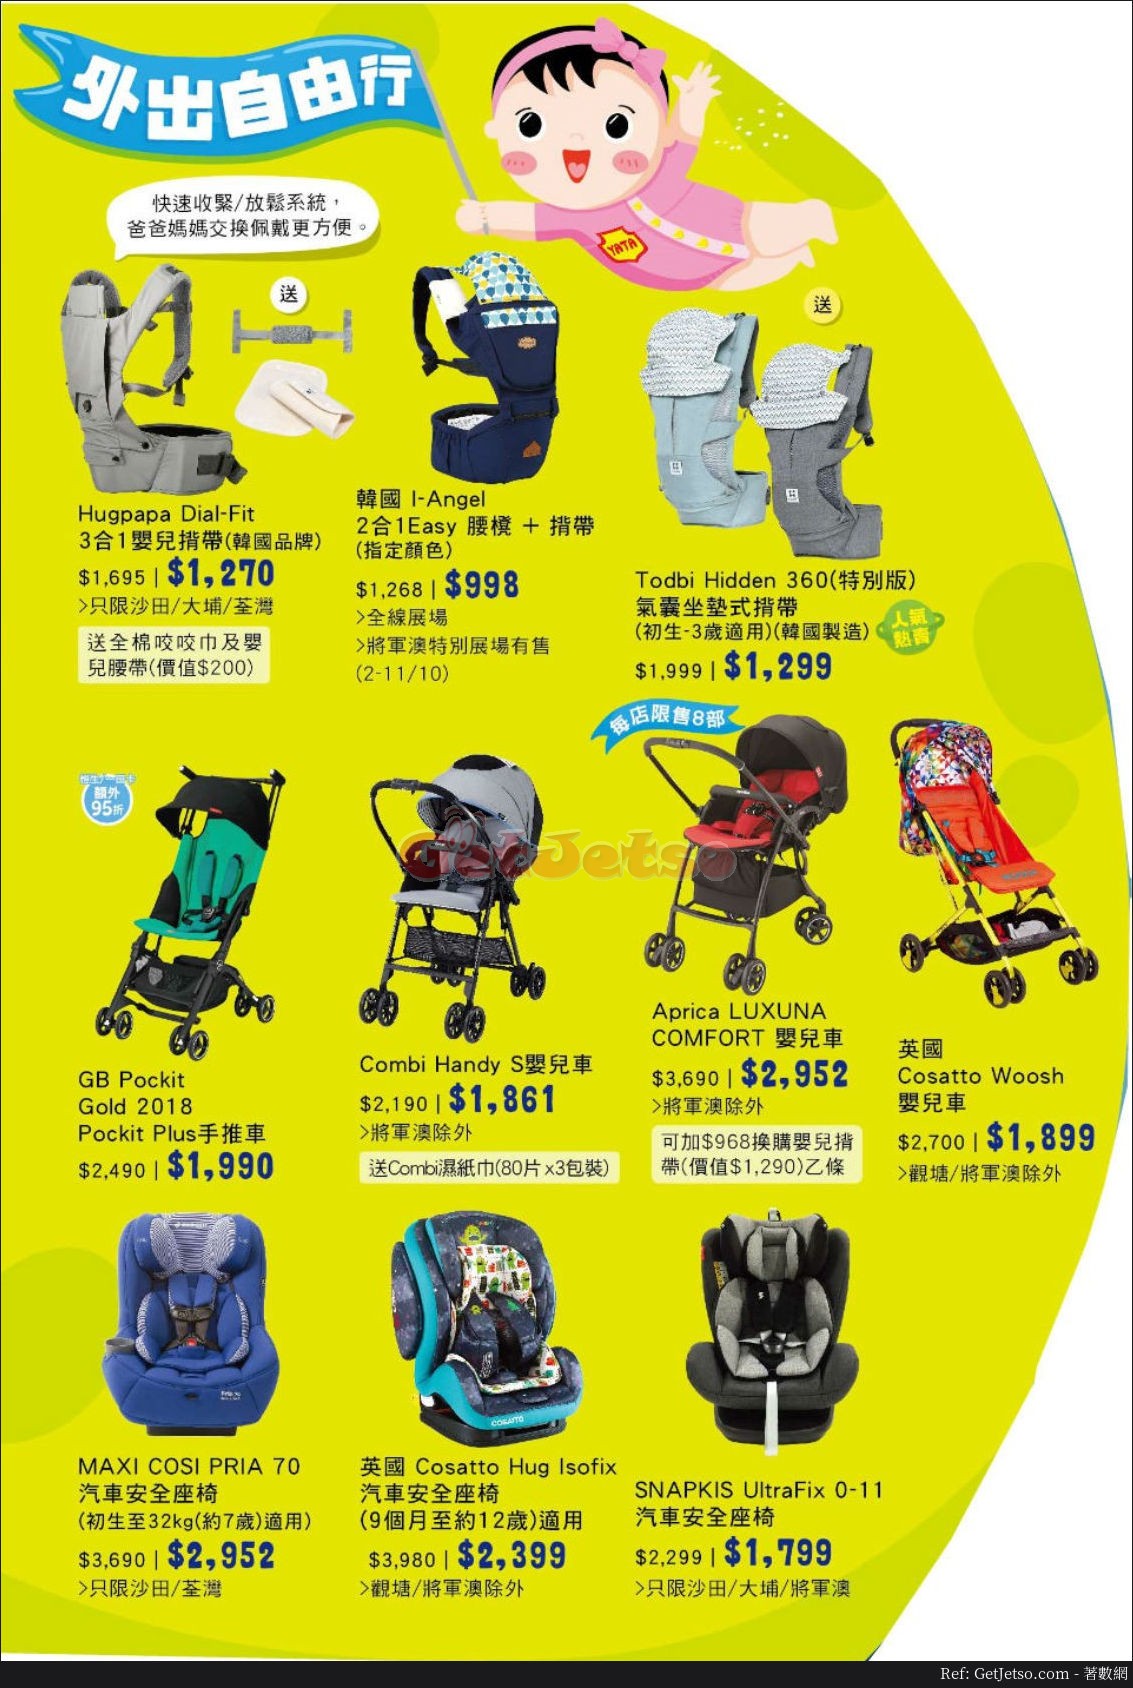 一田百貨Superbaby嬰兒用品展低至3折優惠(至18年10月9日)圖片1